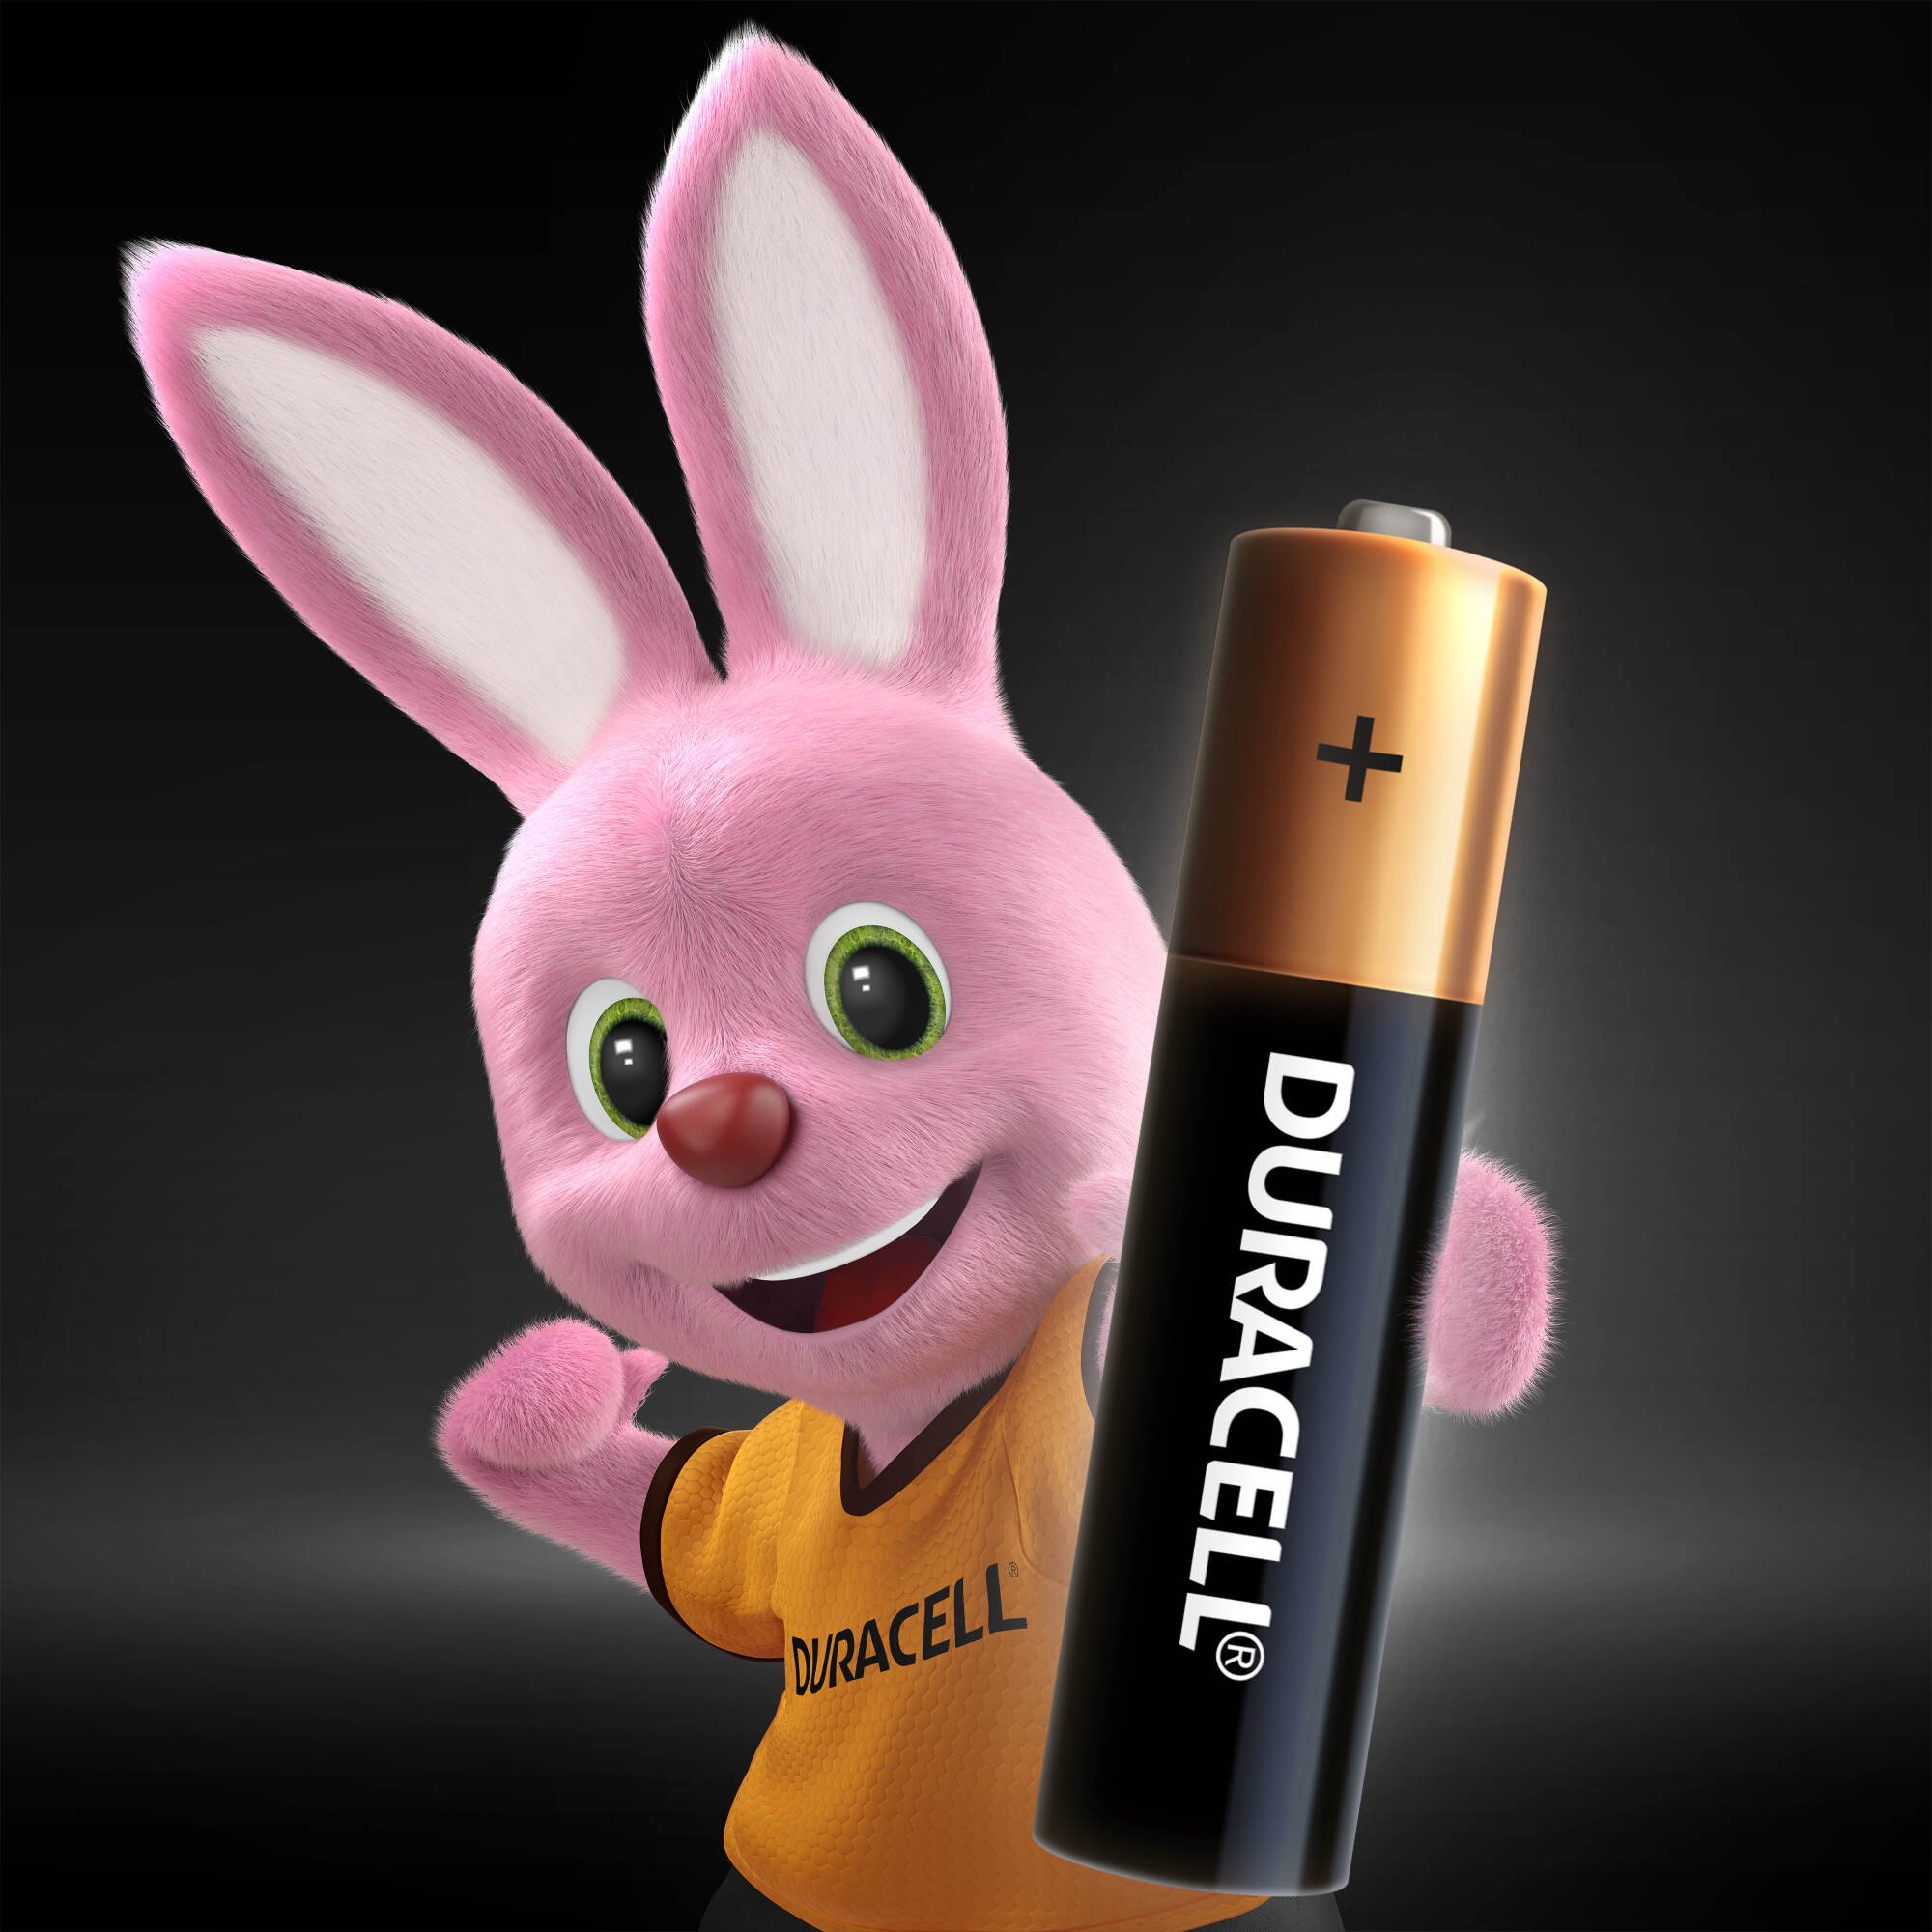 Лужні батарейки мізинчикові Duracell 1,5 V AAA LR03/MN2400, 2 шт. (706007) - фото 2